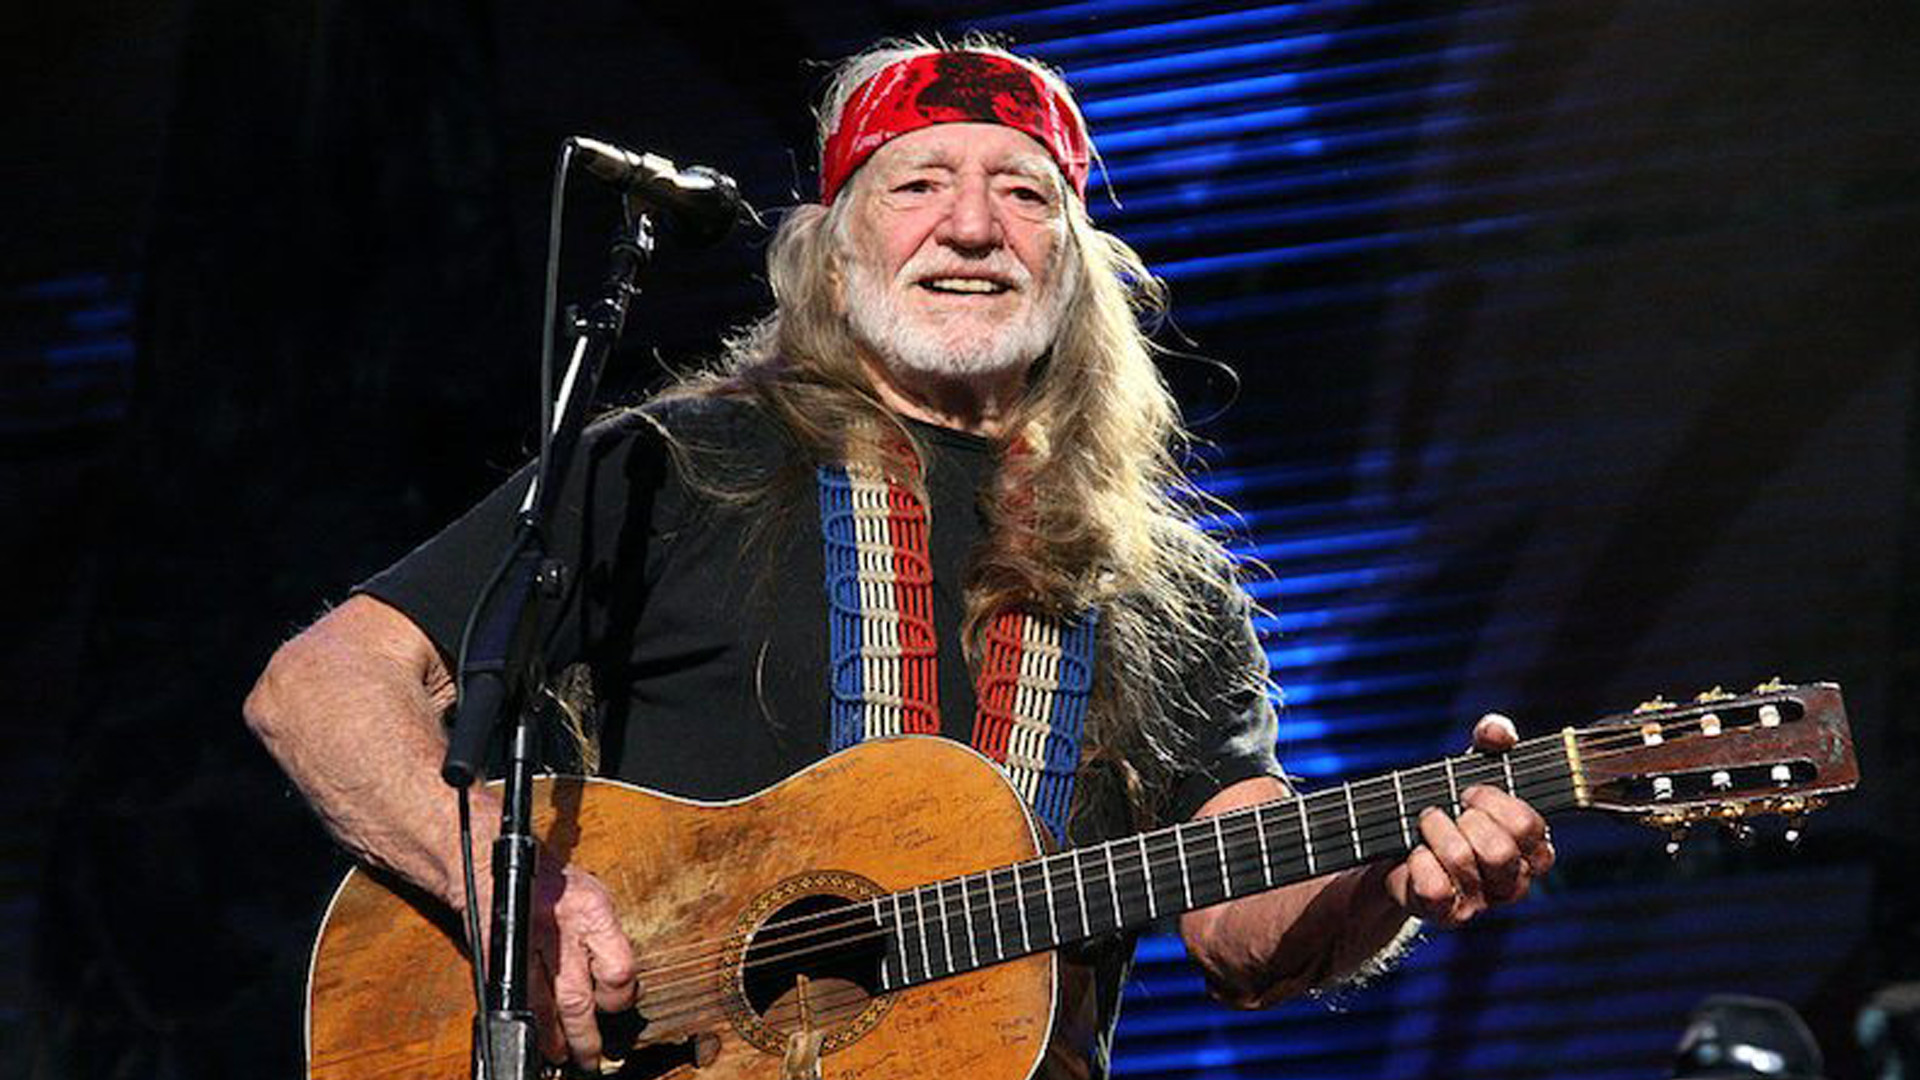 Der Country-Sänger Willie Nelson mit Akkustikgitarre auf der Bühne